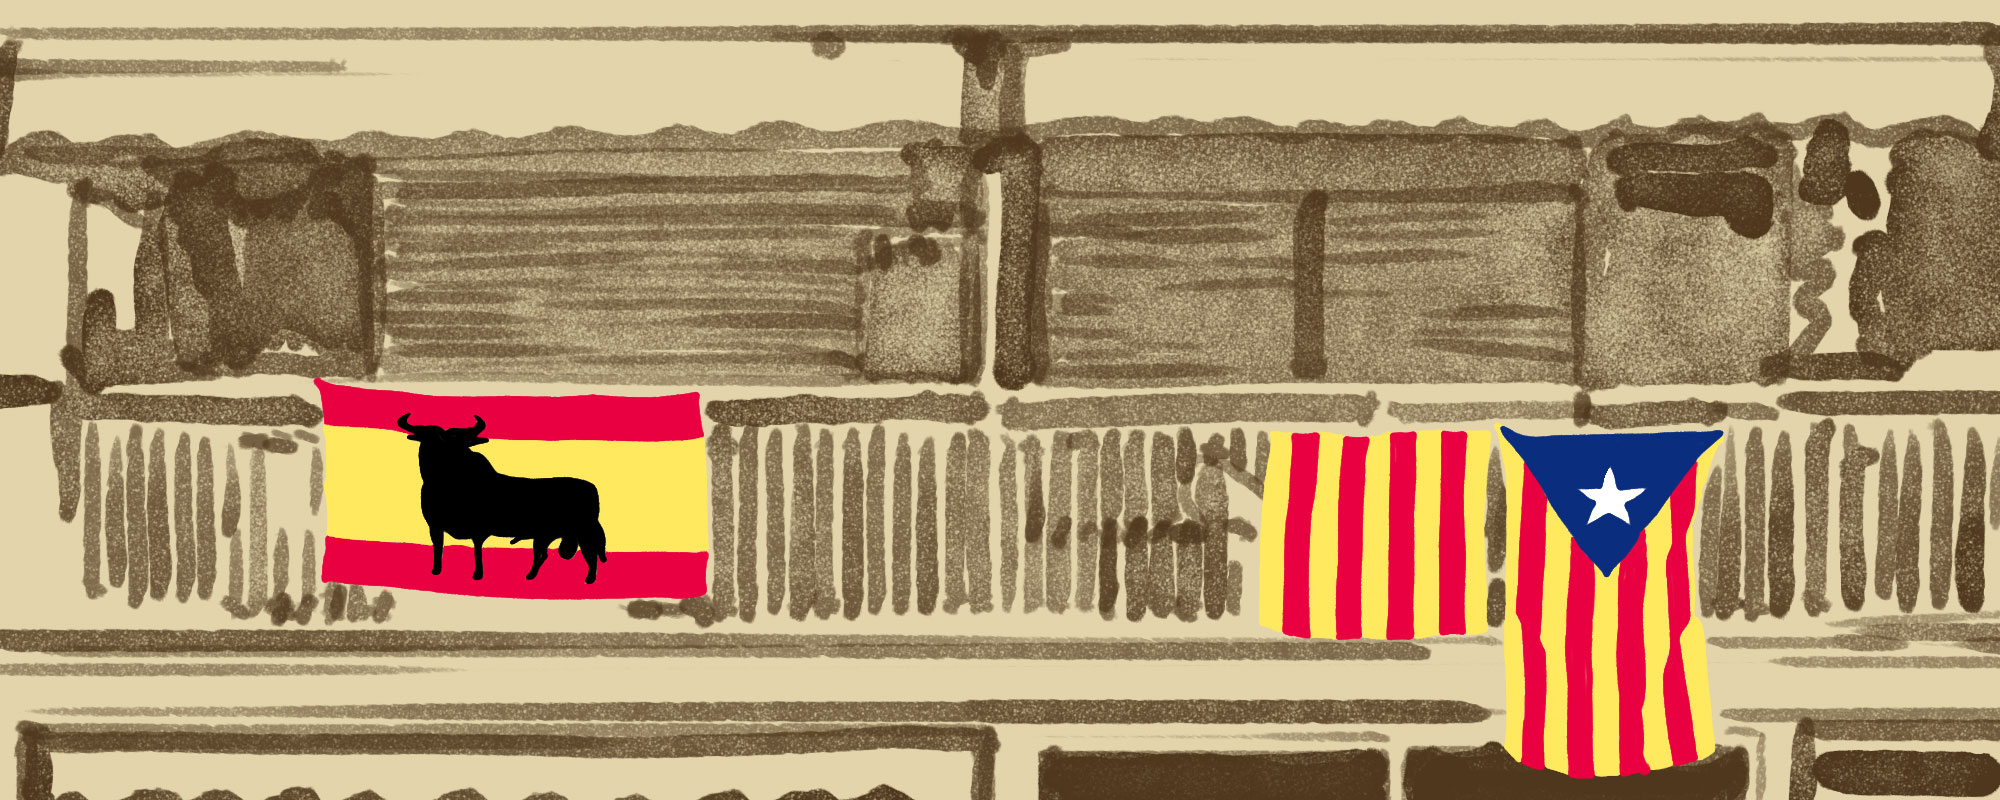 Catalunya-Espanya: del conflicte al diàleg polític? Dossier especial de la revista IDEES